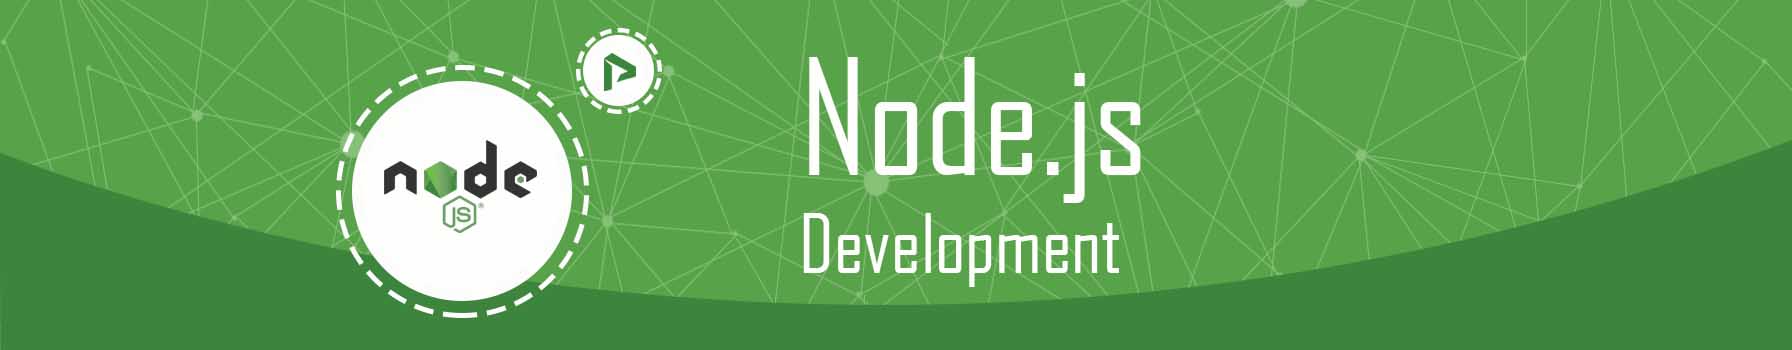 node.js-development.jpg